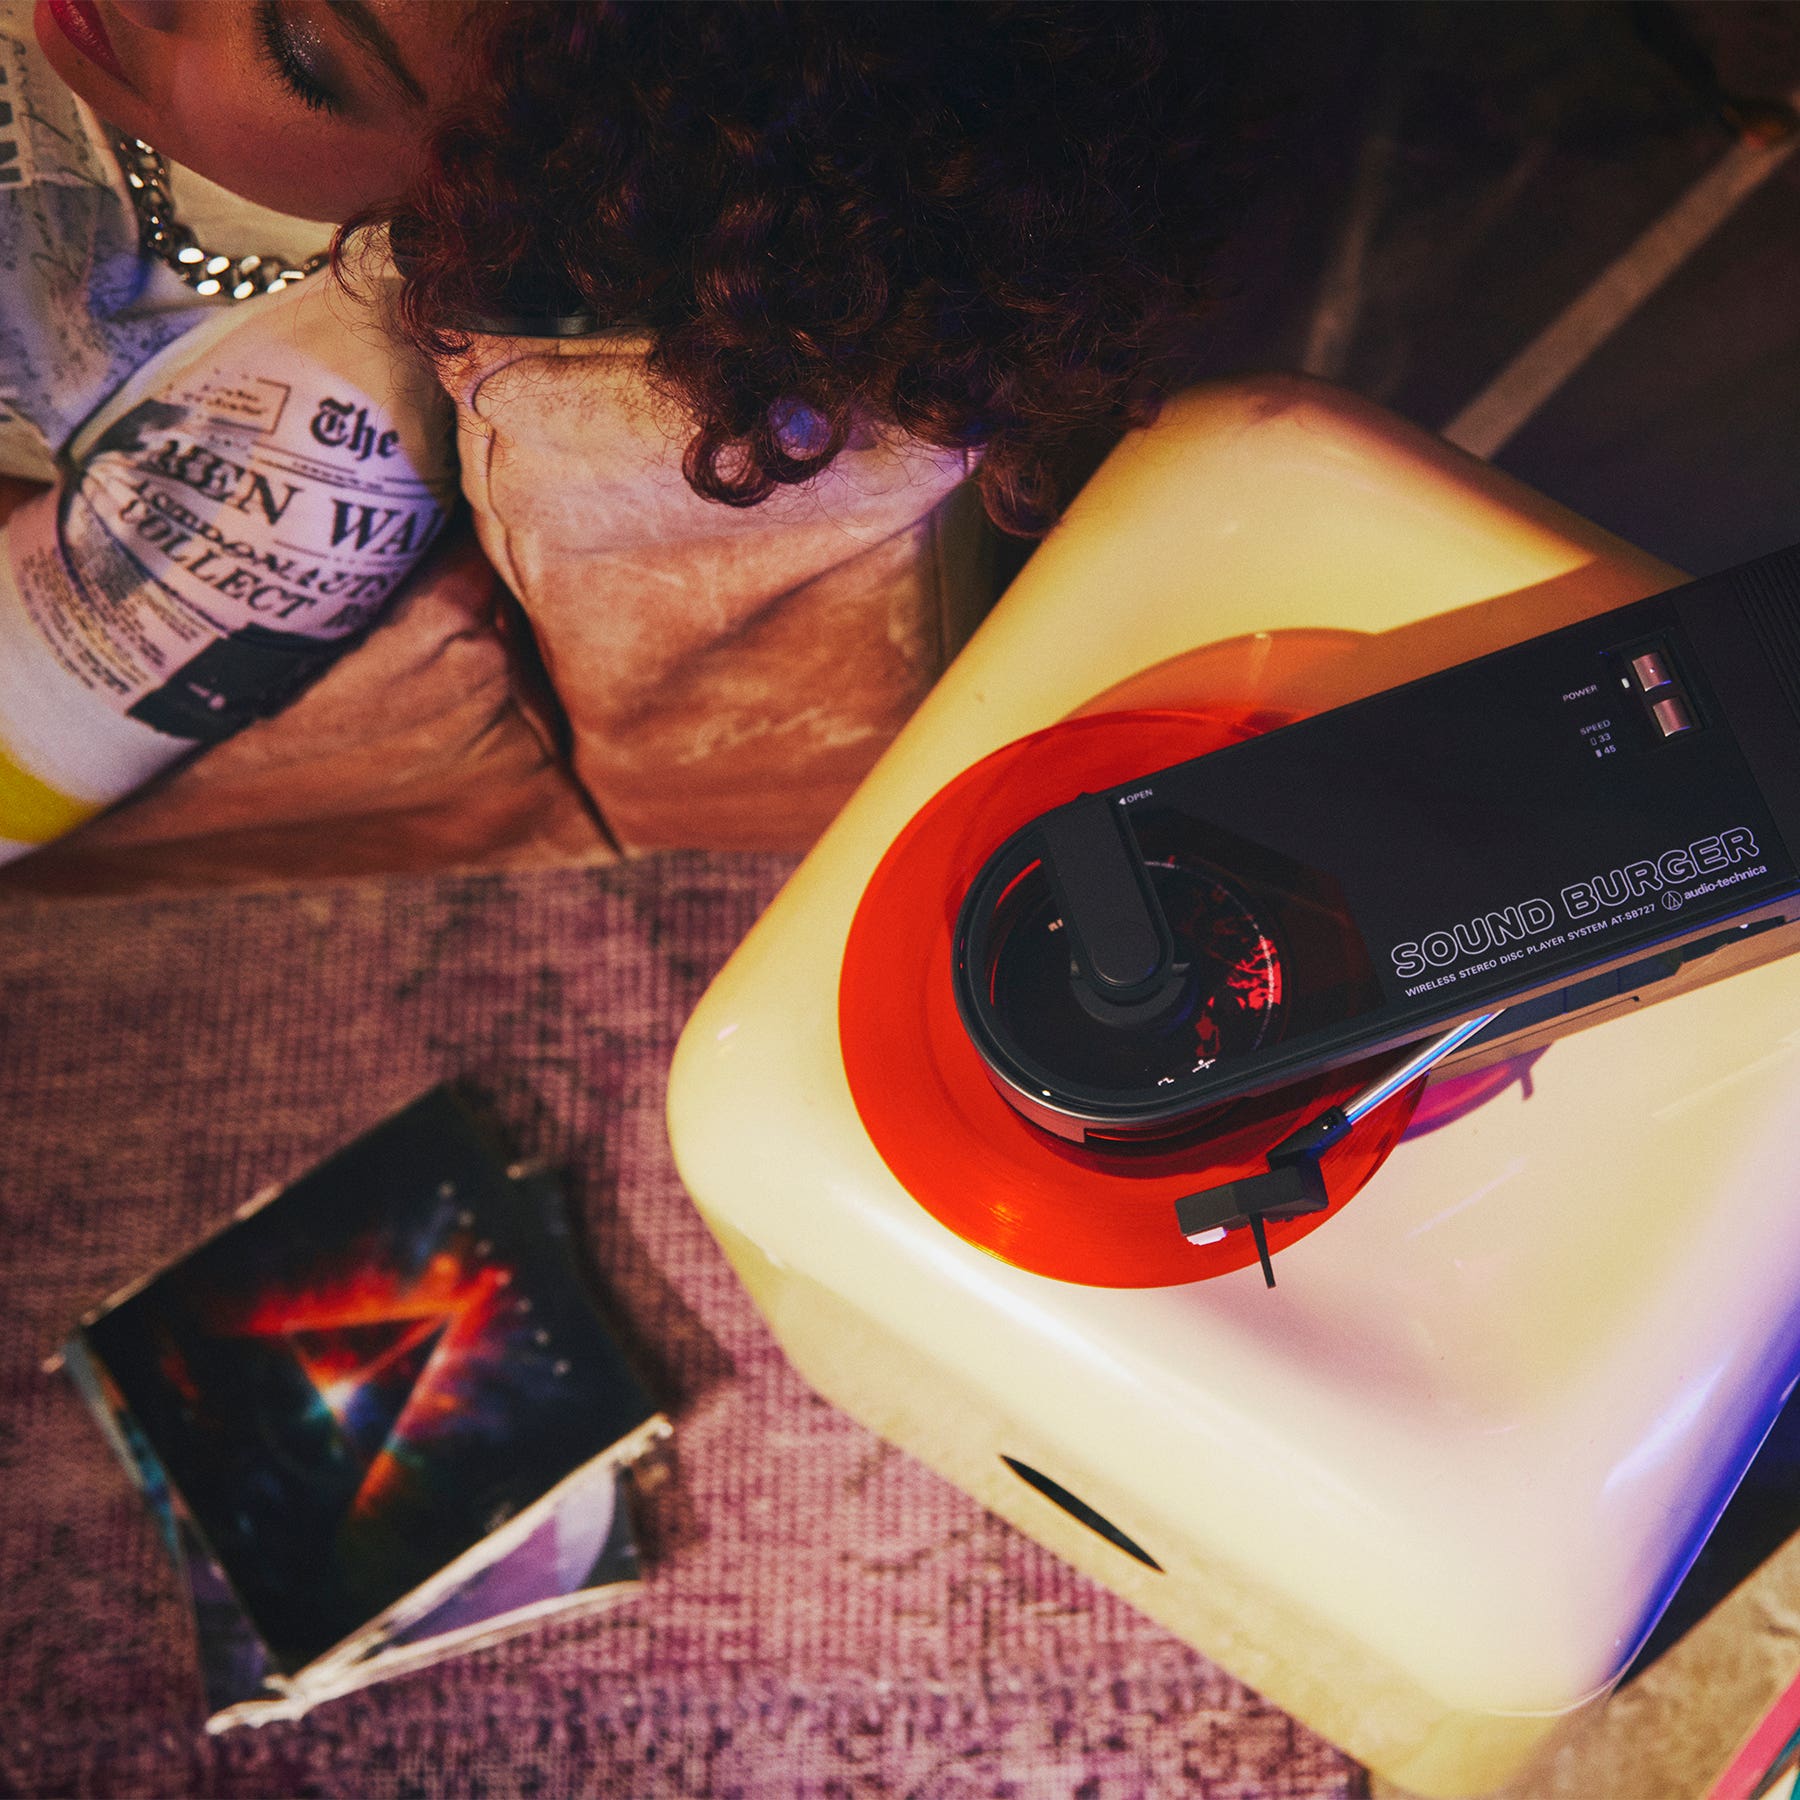 Sound Burger de Audio-Technica: el giradiscos portátil más vendido vuelve con nuevos colores nostálgicos